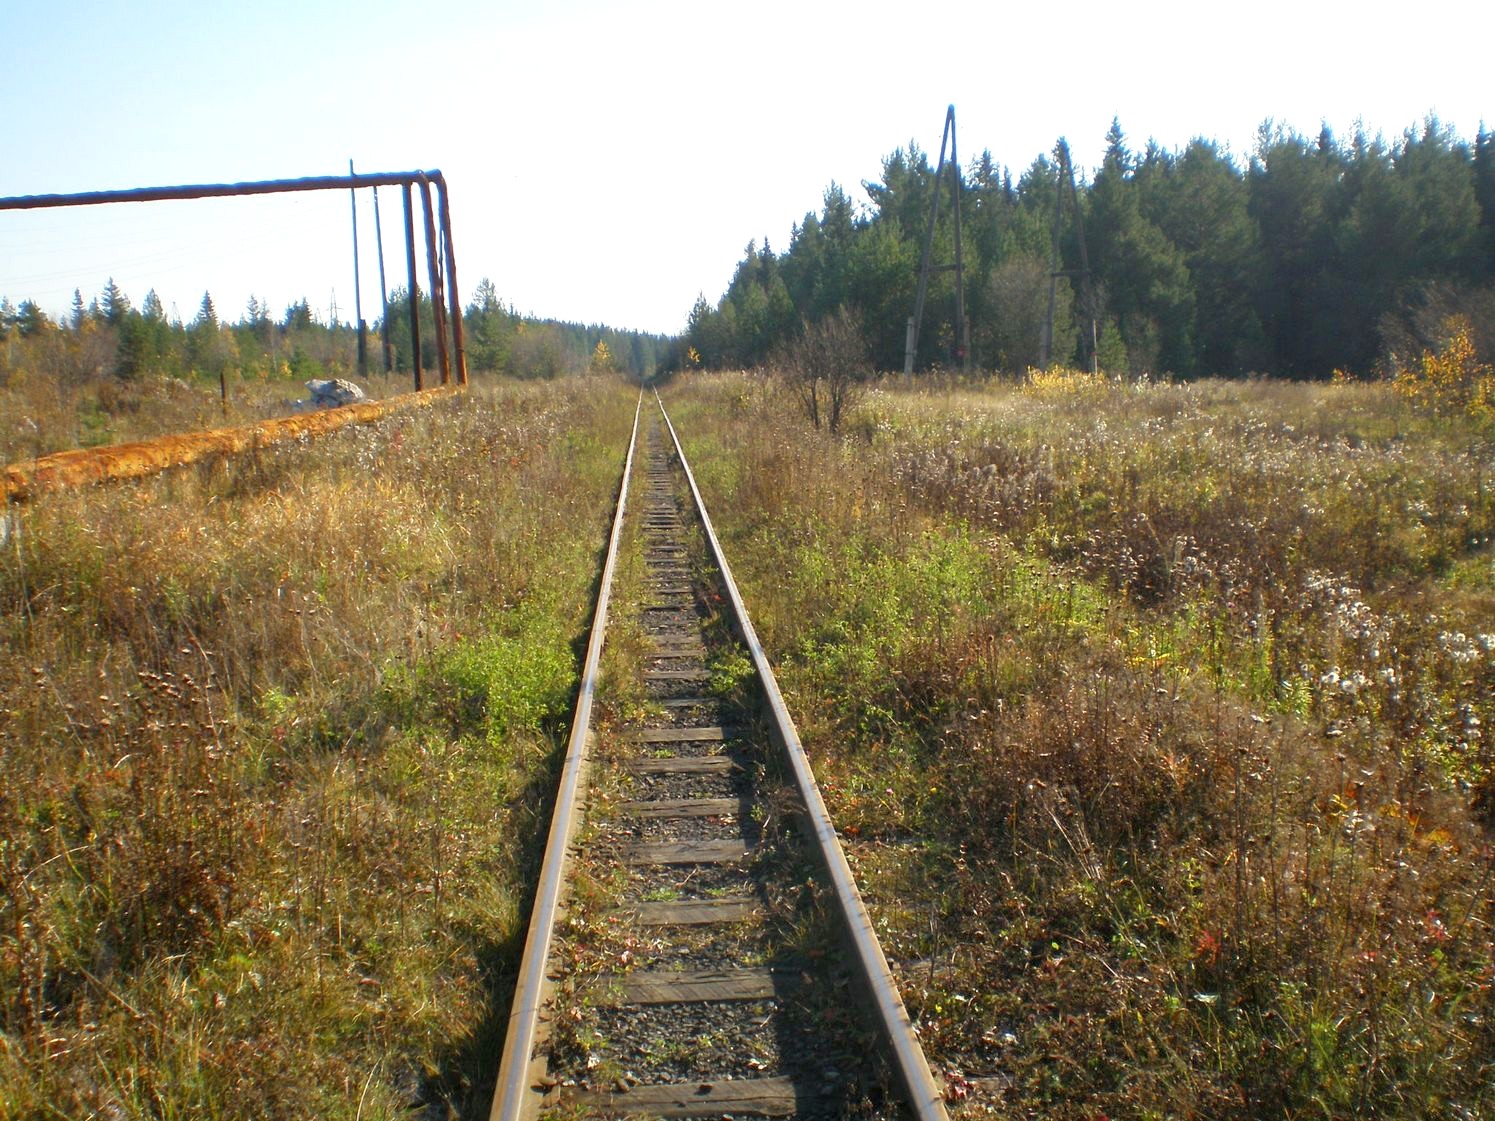 Висимо-Уткинская узкоколейная железная дорога  — фотографии, сделанные в 2007 году (часть 31)